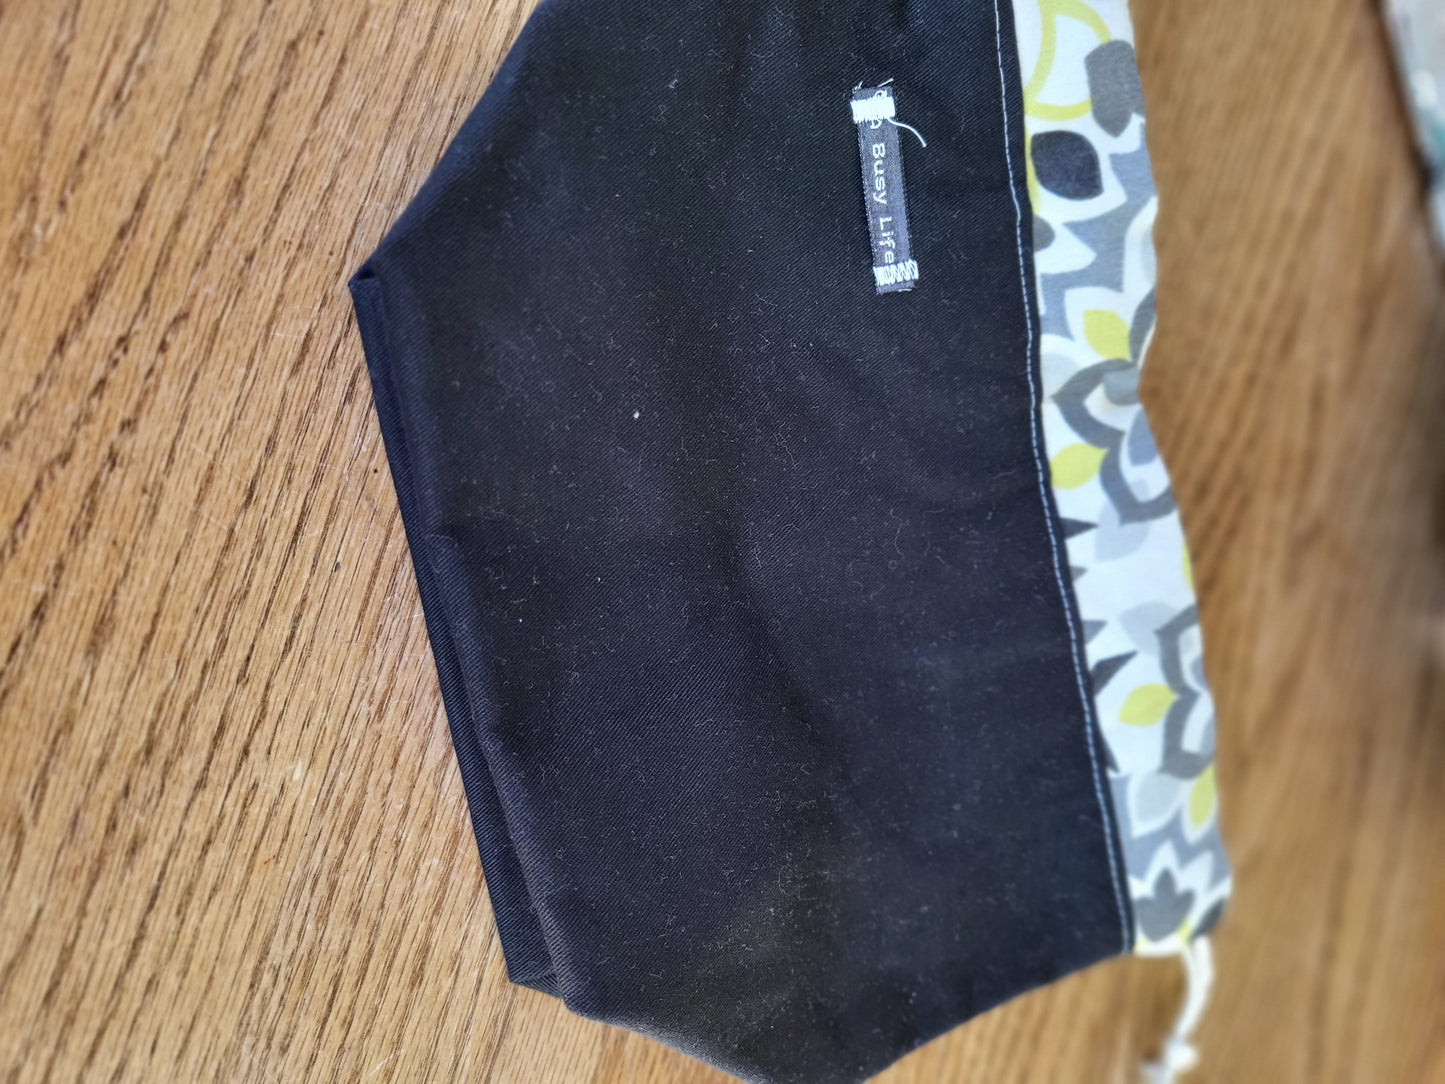 Black and Floral drawstring Sock Sack, Drawstring bag, small project bag, small storage bag